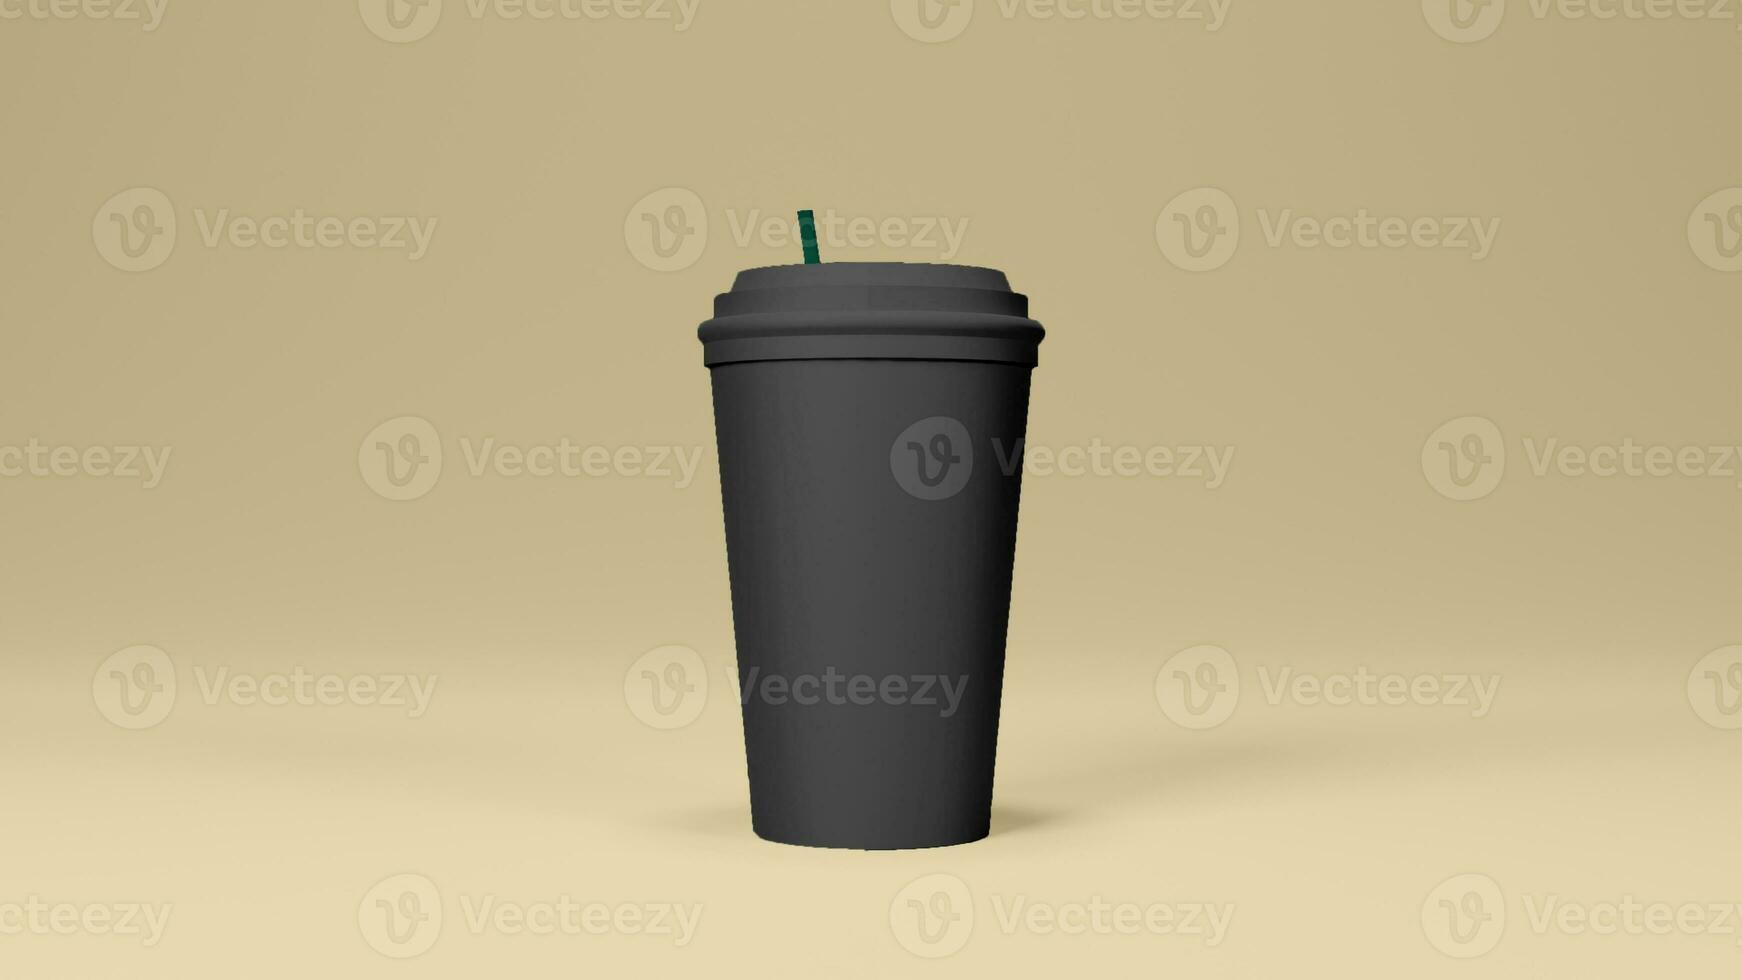 svart färgad varm kaffe kopp i gul bakgrund foto